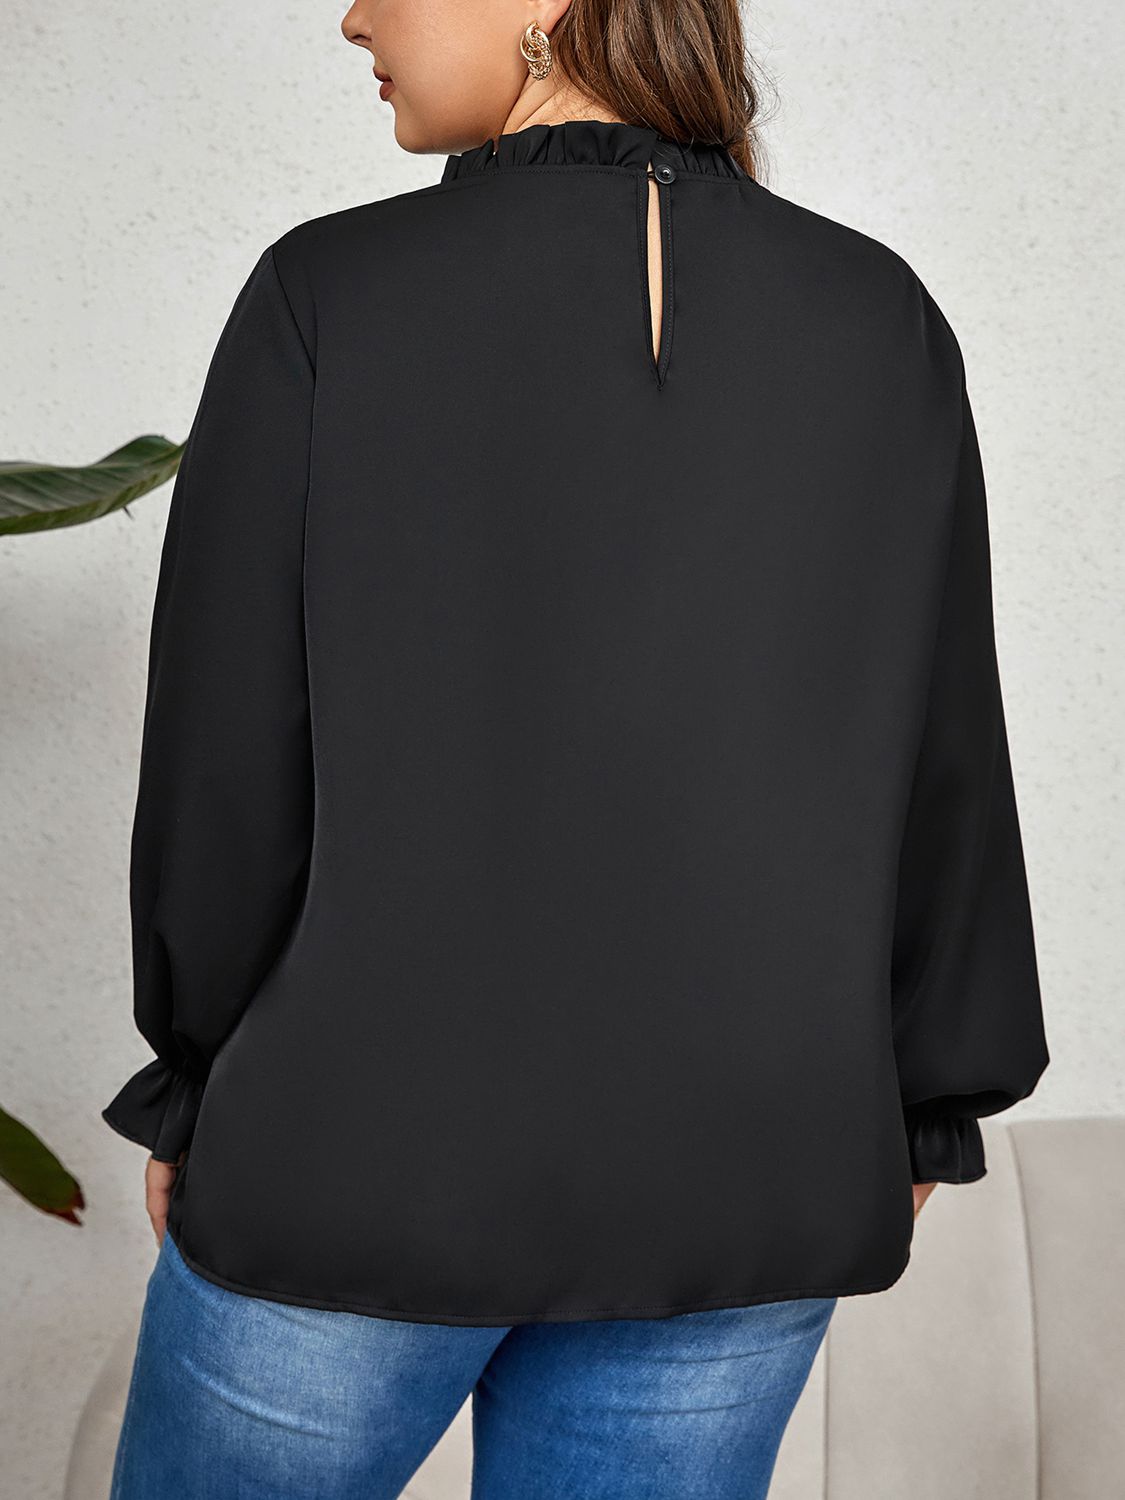 Elegant Black Flounce Sleeve Shirt ( 1X - 4X)